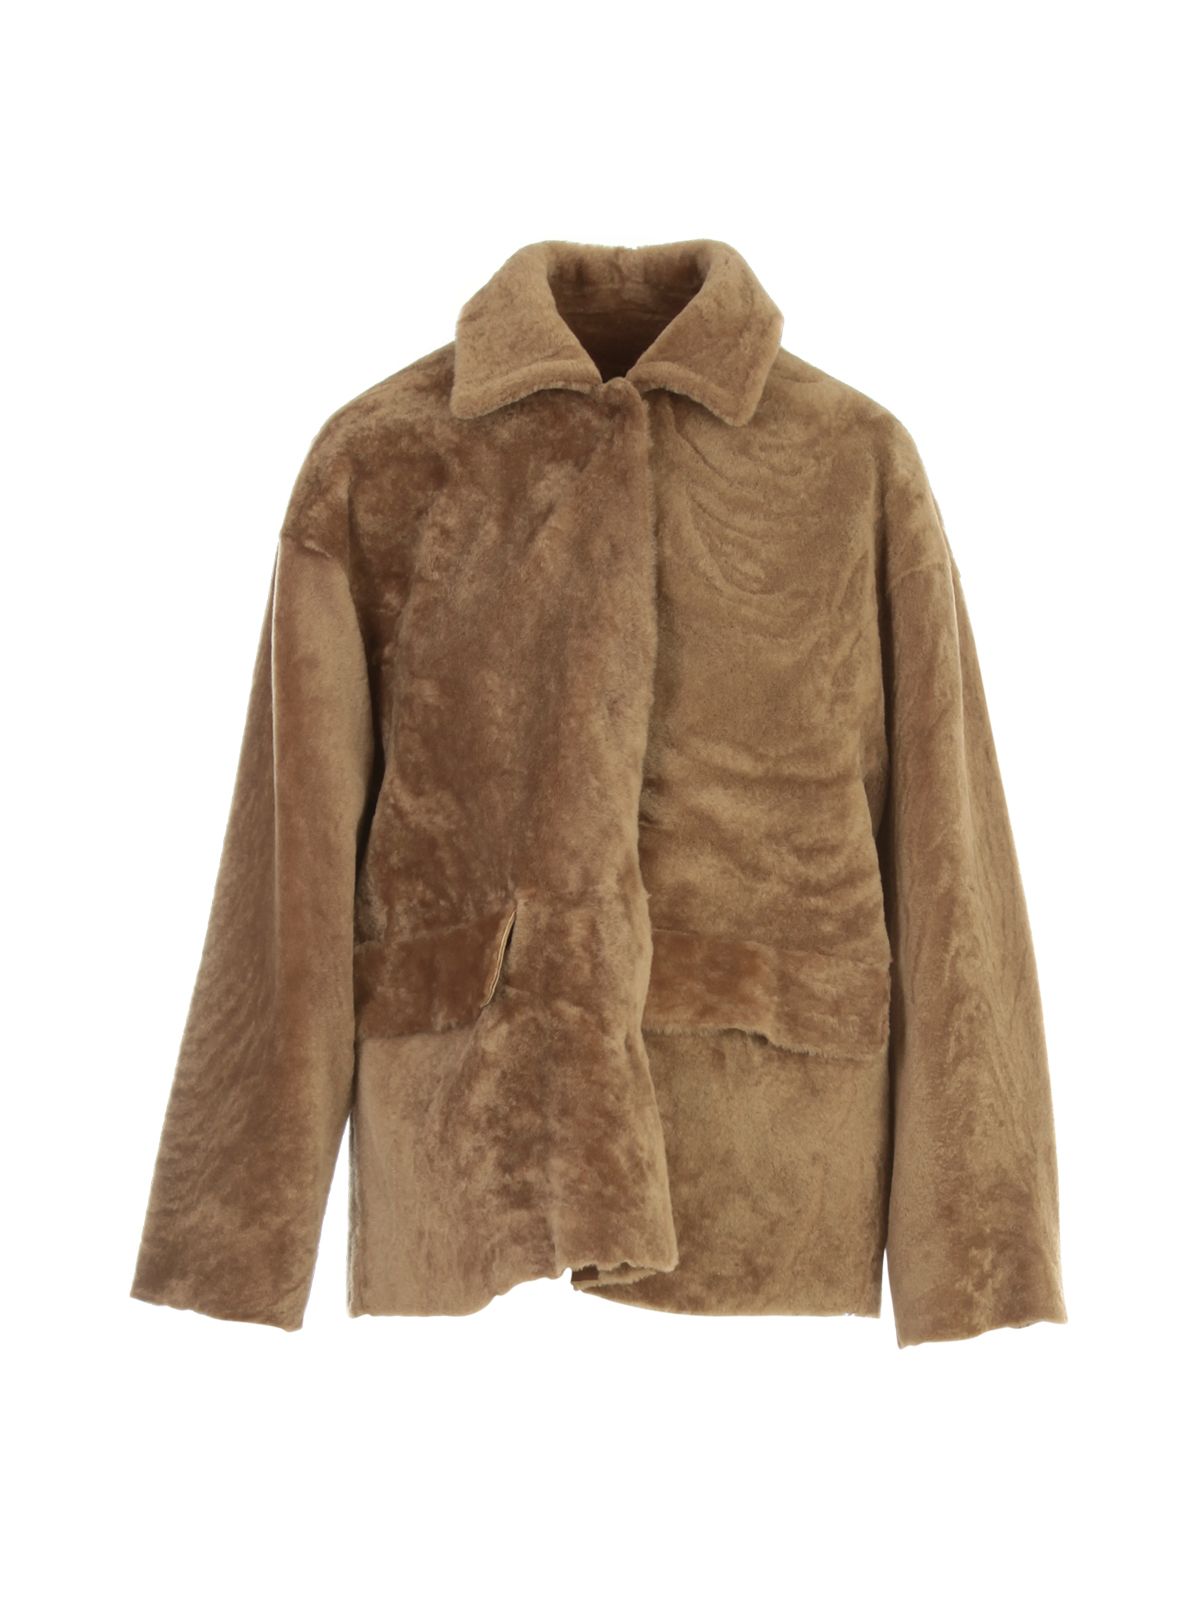 Desa 1972 Brown Fur Coats